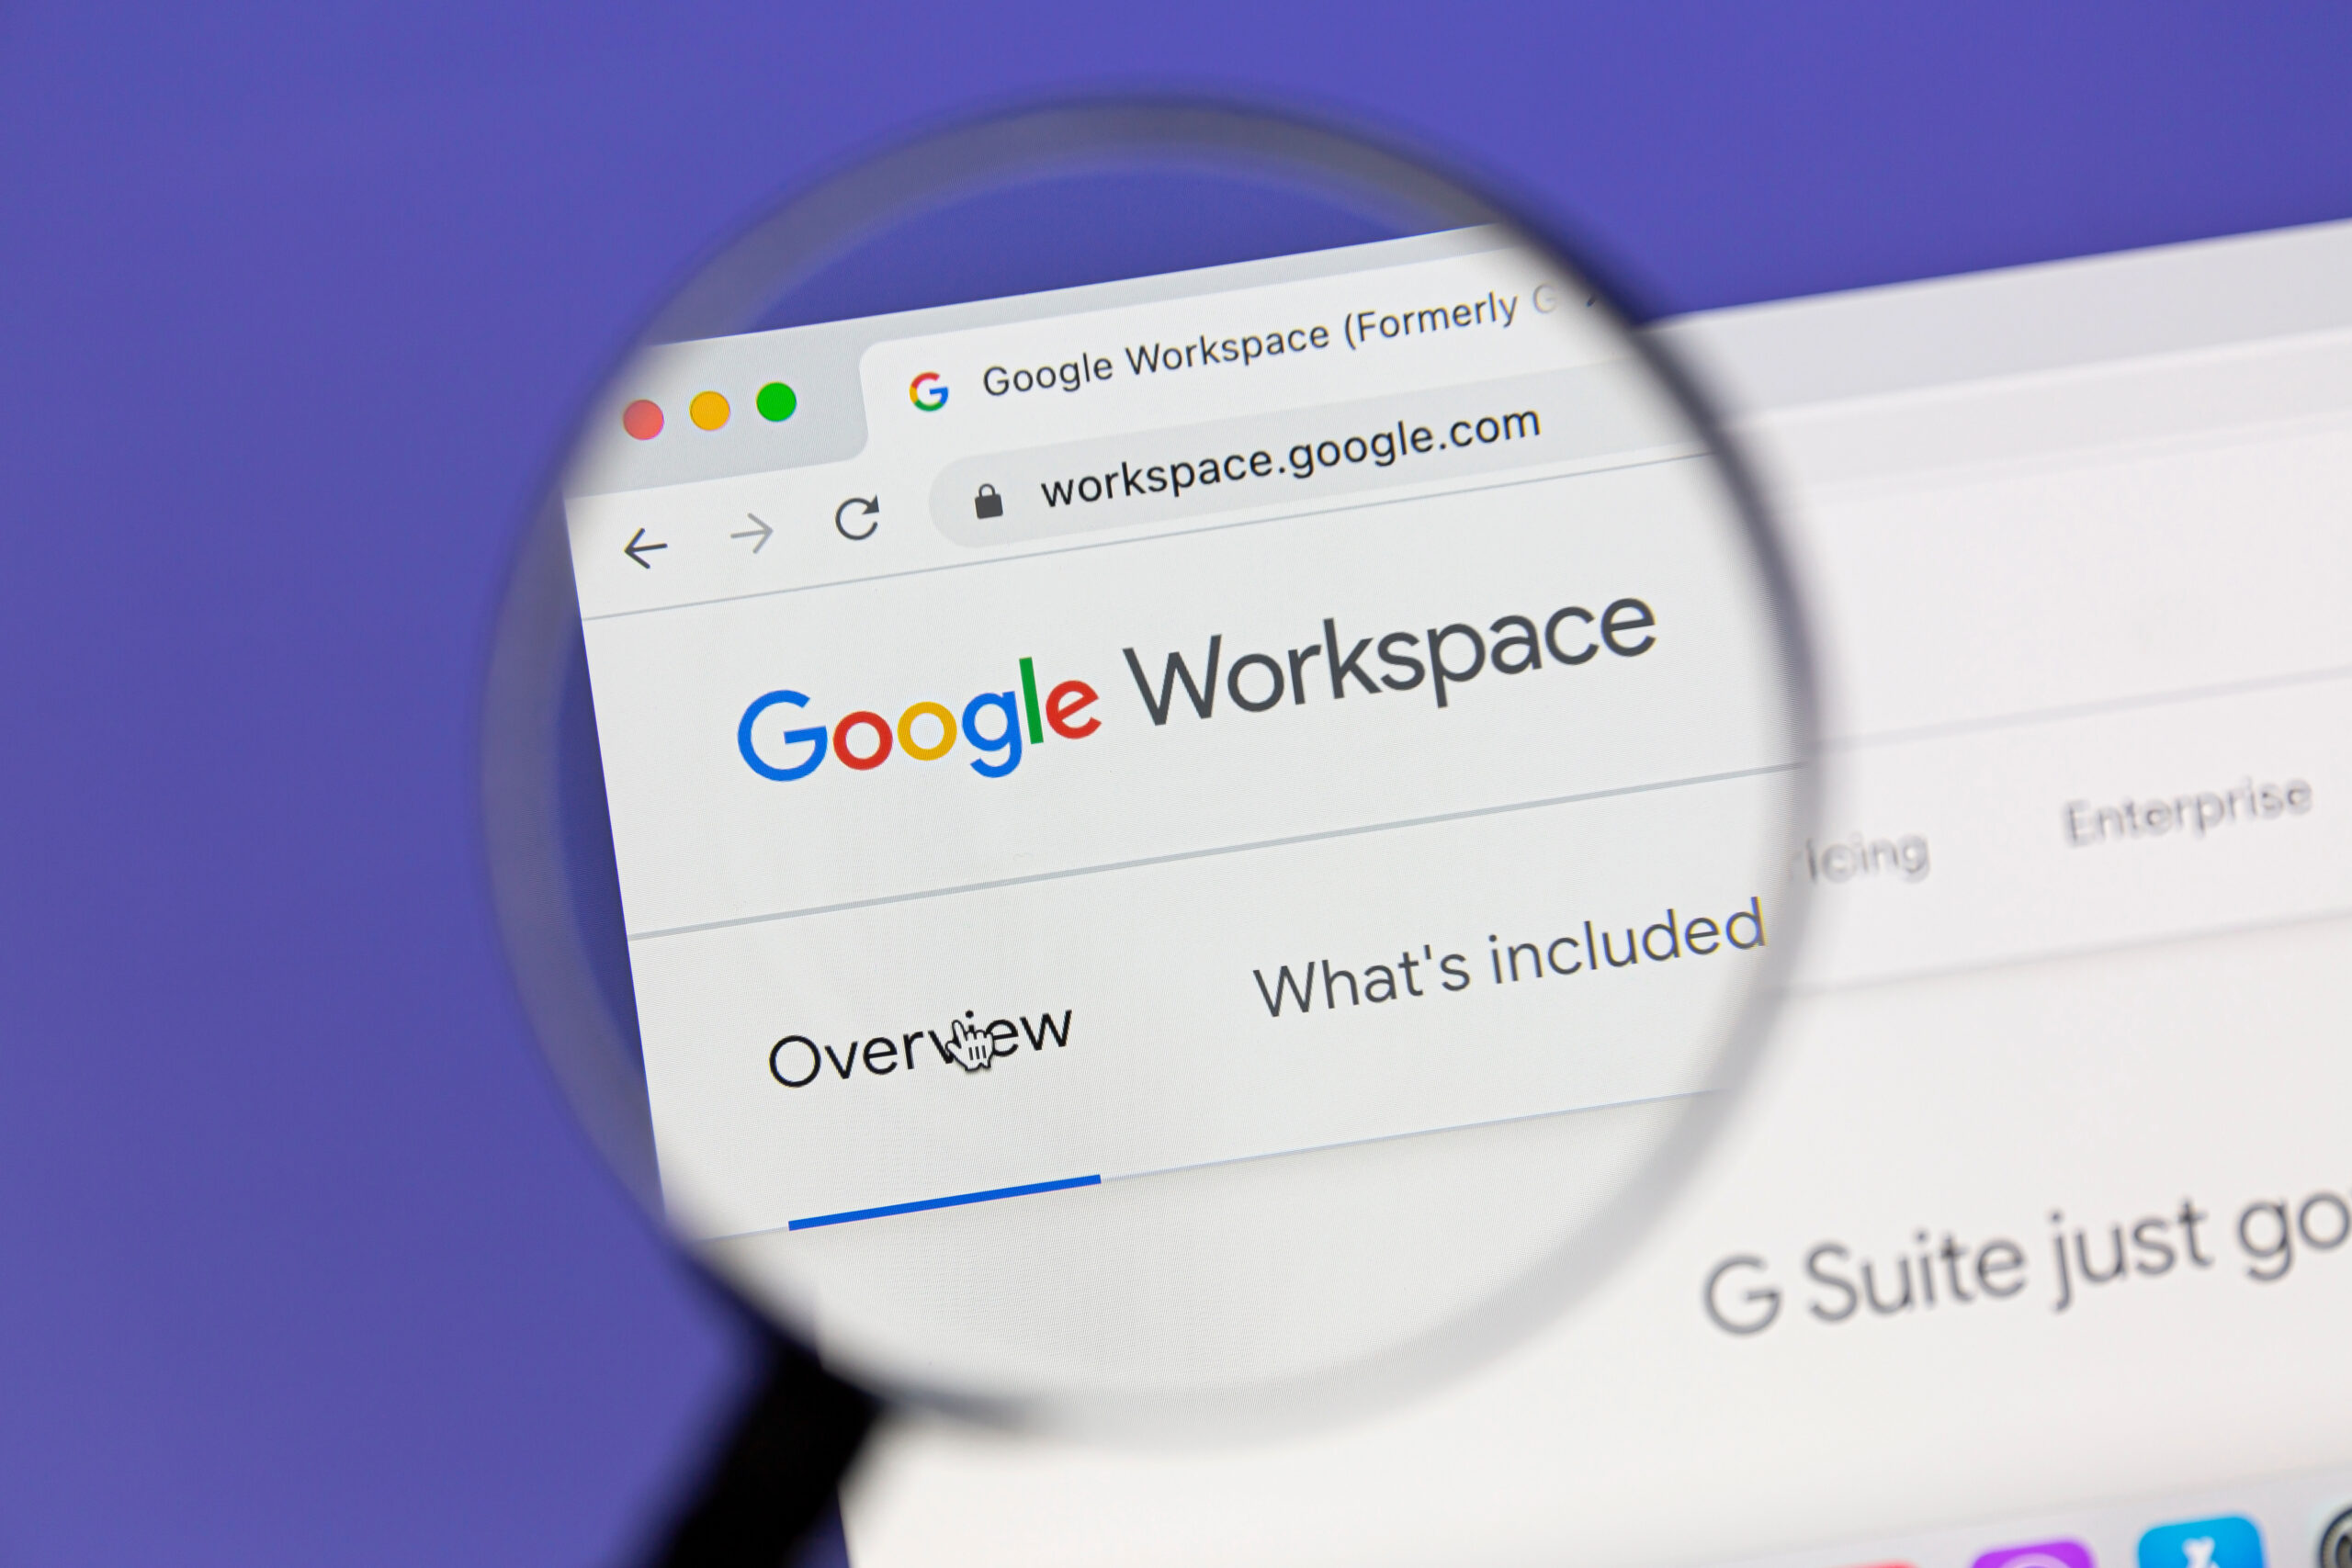 Google Workspace website